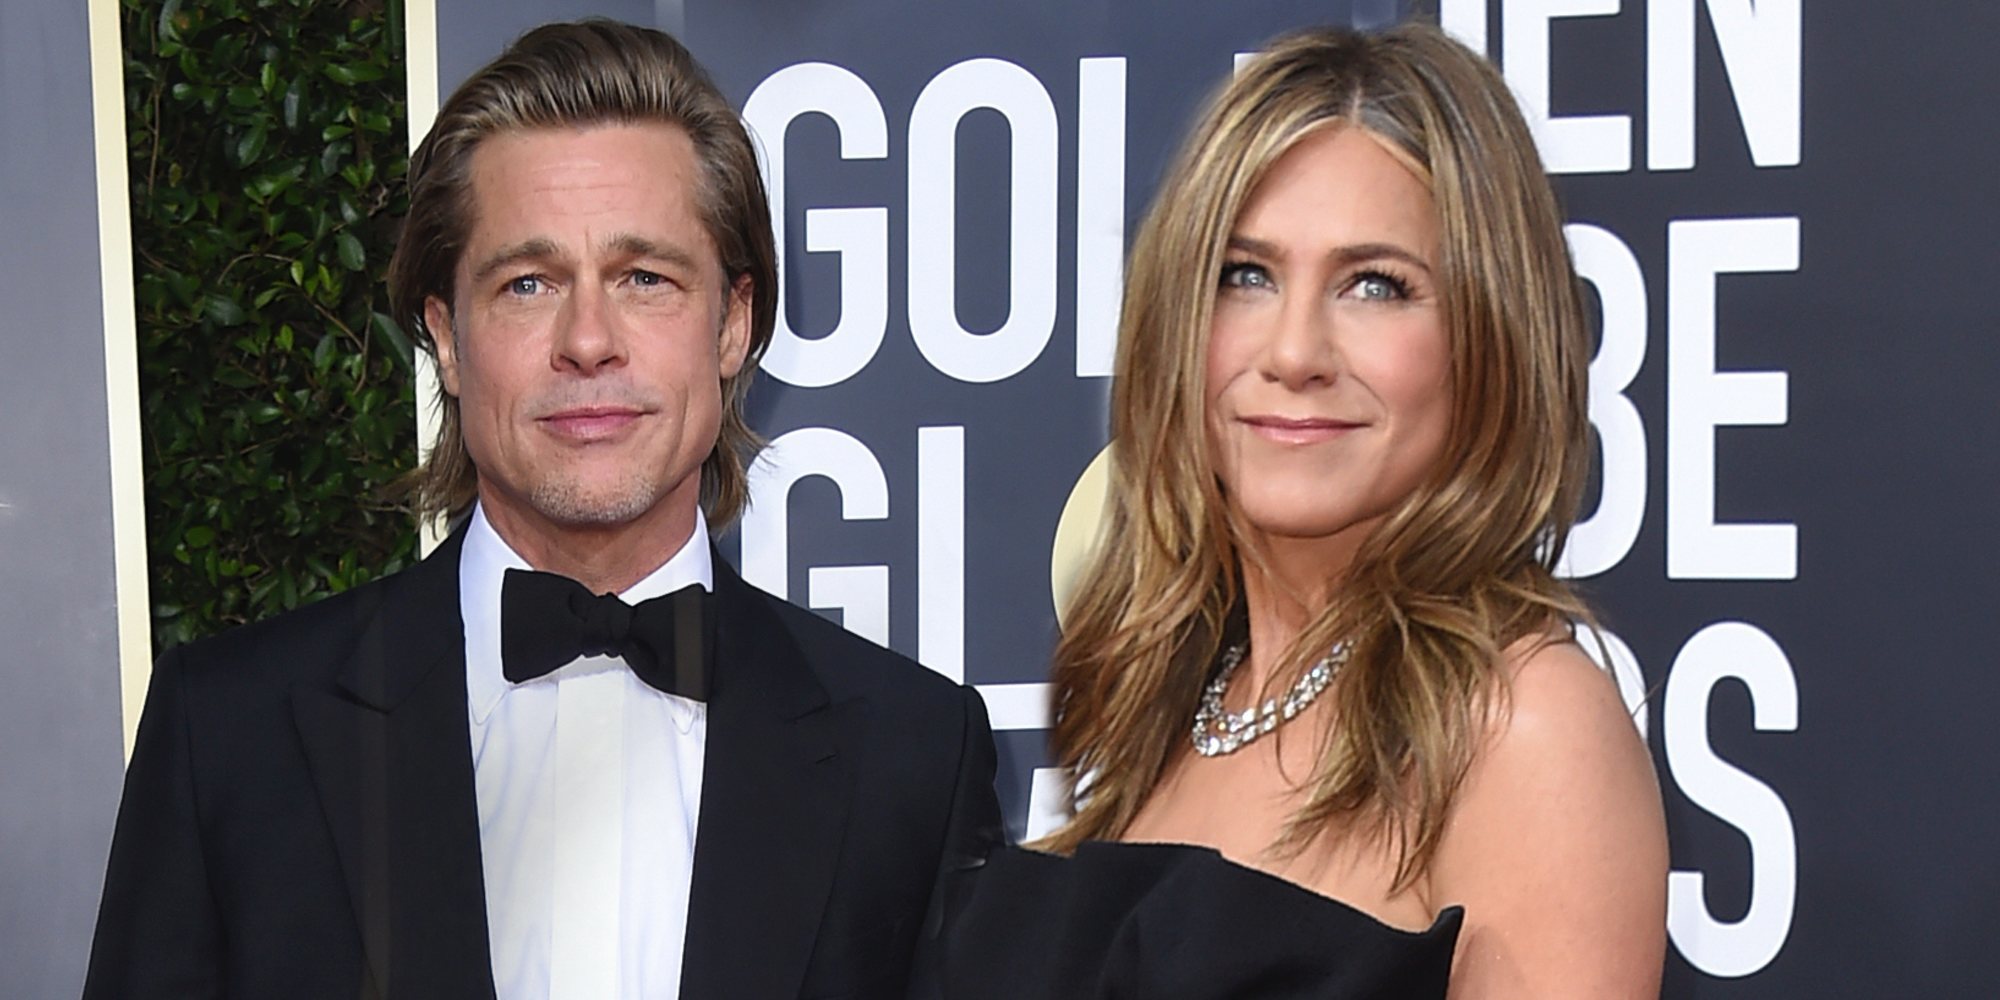 La tierna mirada con la que Jennifer Aniston miraba a Brad Pitt durante su discurso en los Globos de Oro 2020